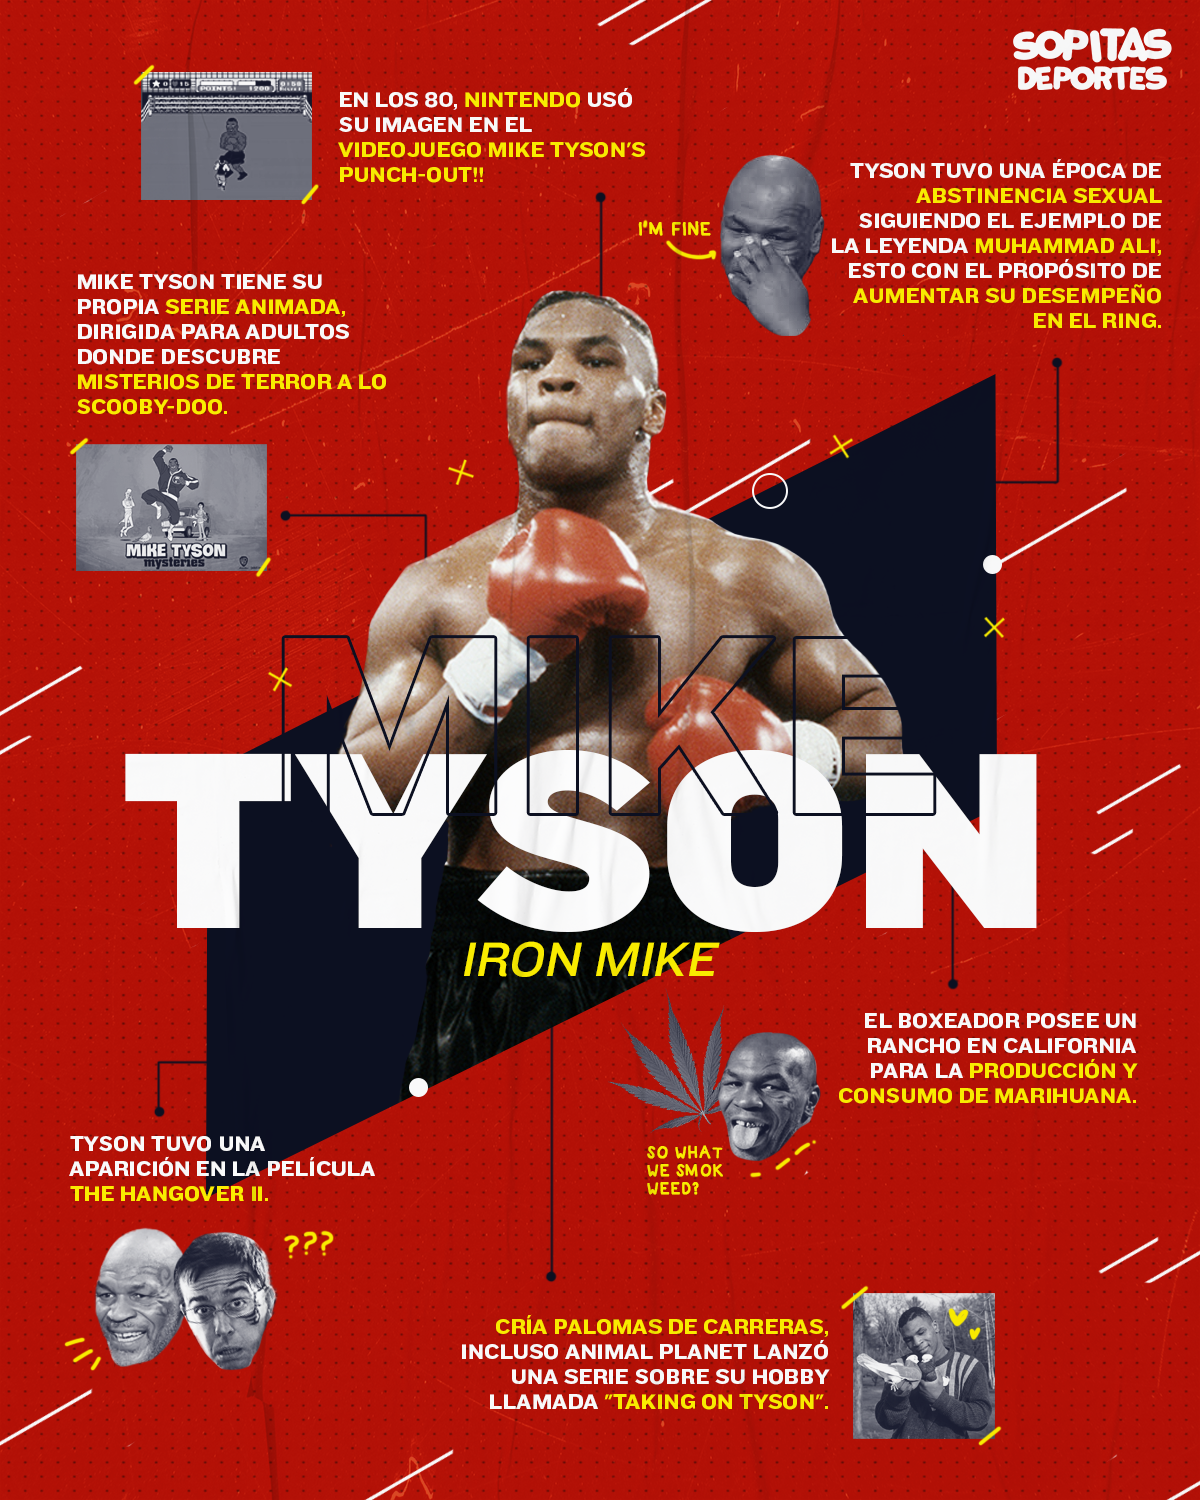 Mike Tyson y el día que tocó fondo tras golpear a 7 mujeres "por estar paranoico"